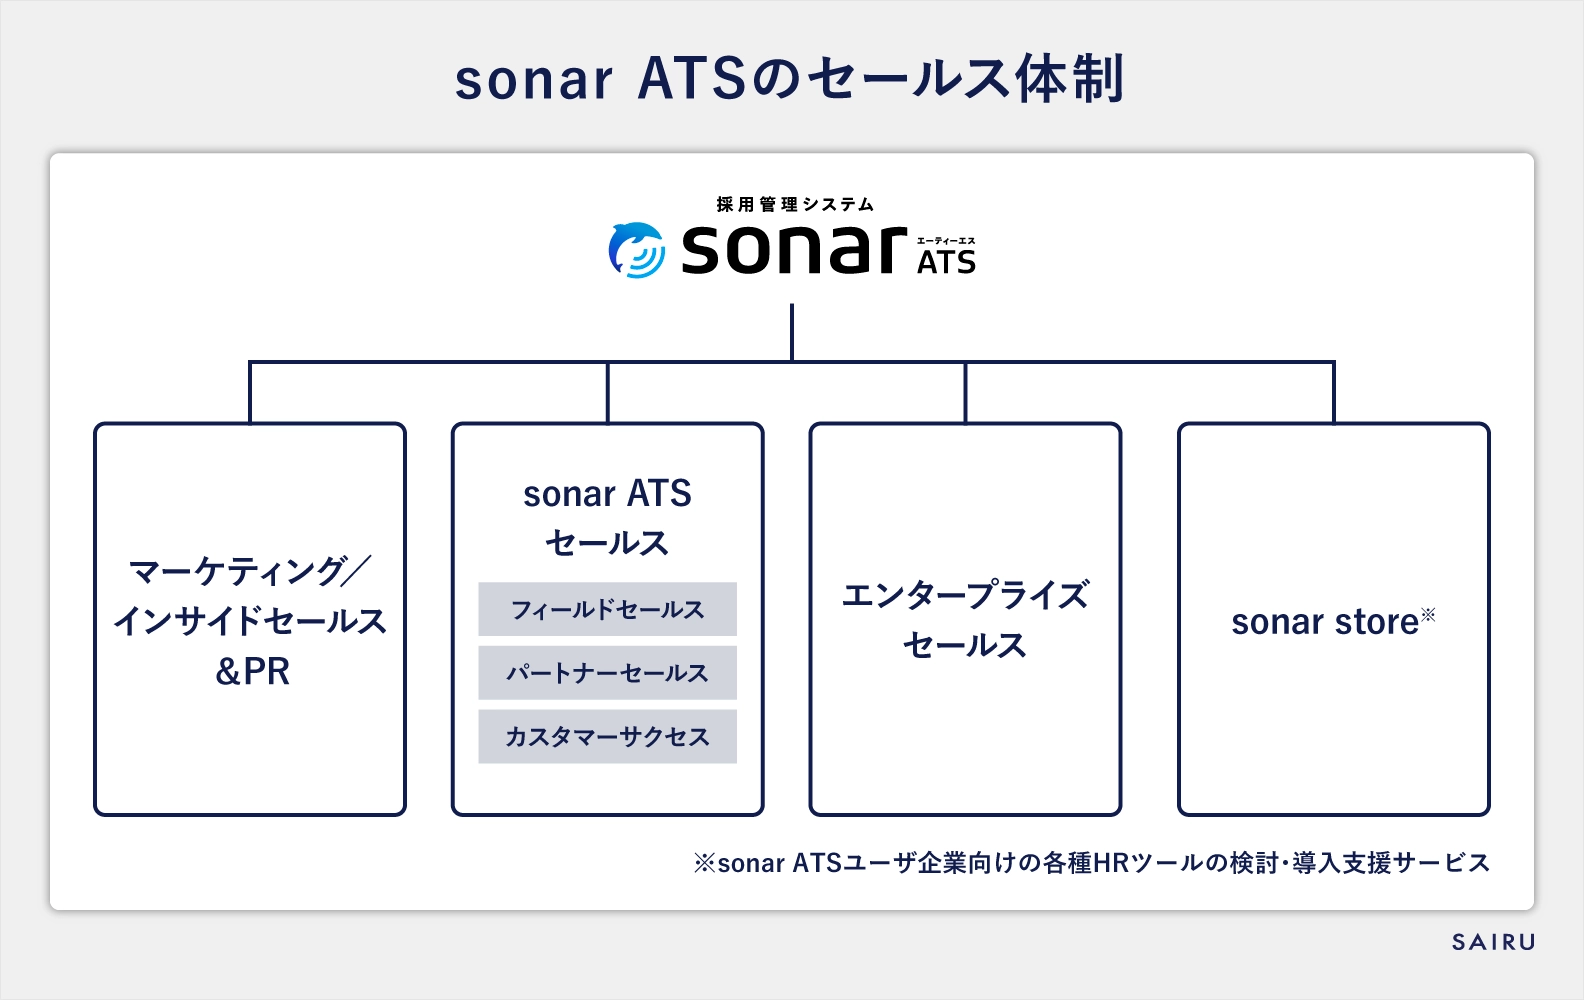 sonar ATSのセールス体制